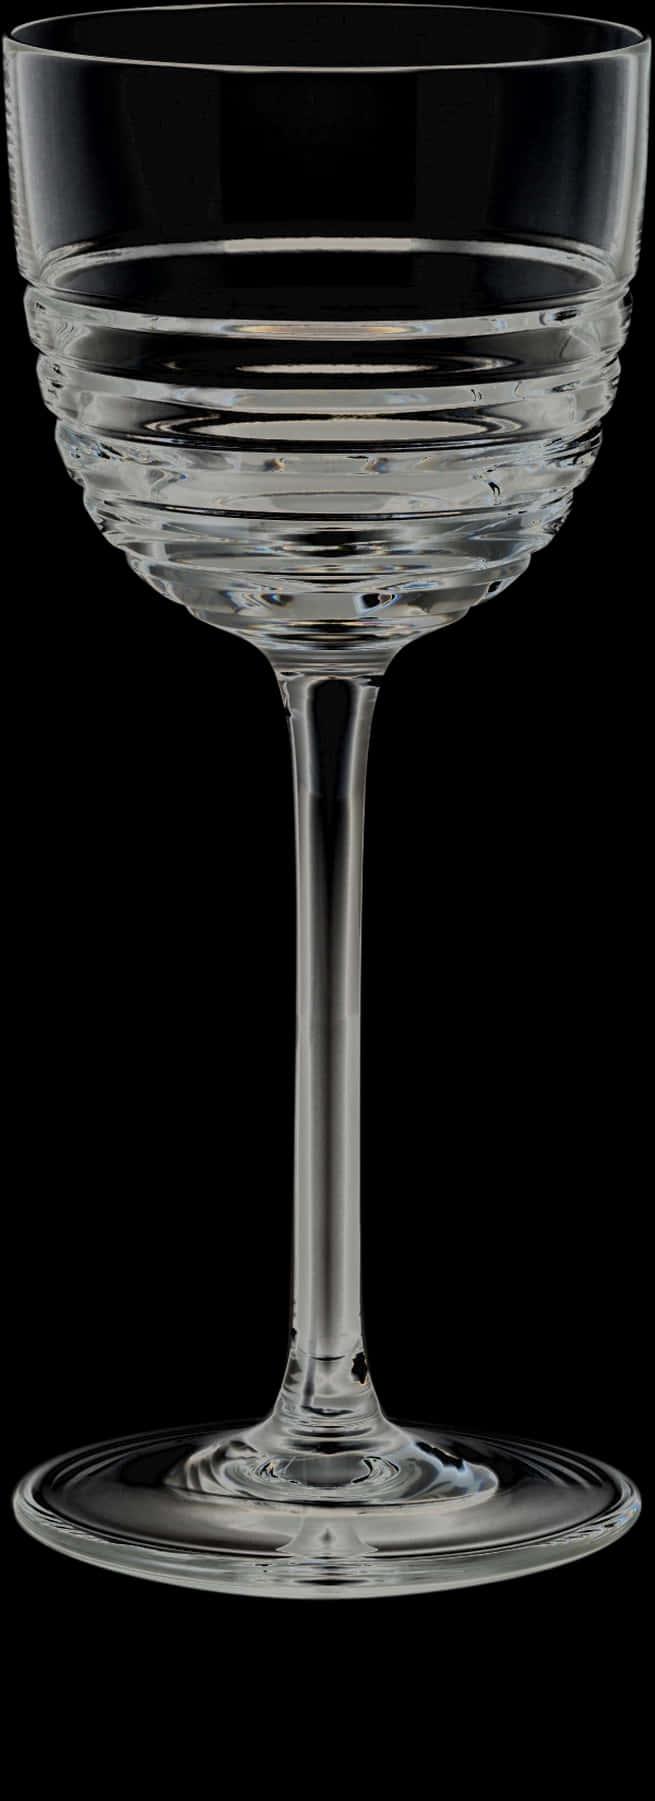 Elegant Stemmed Glassware PNG